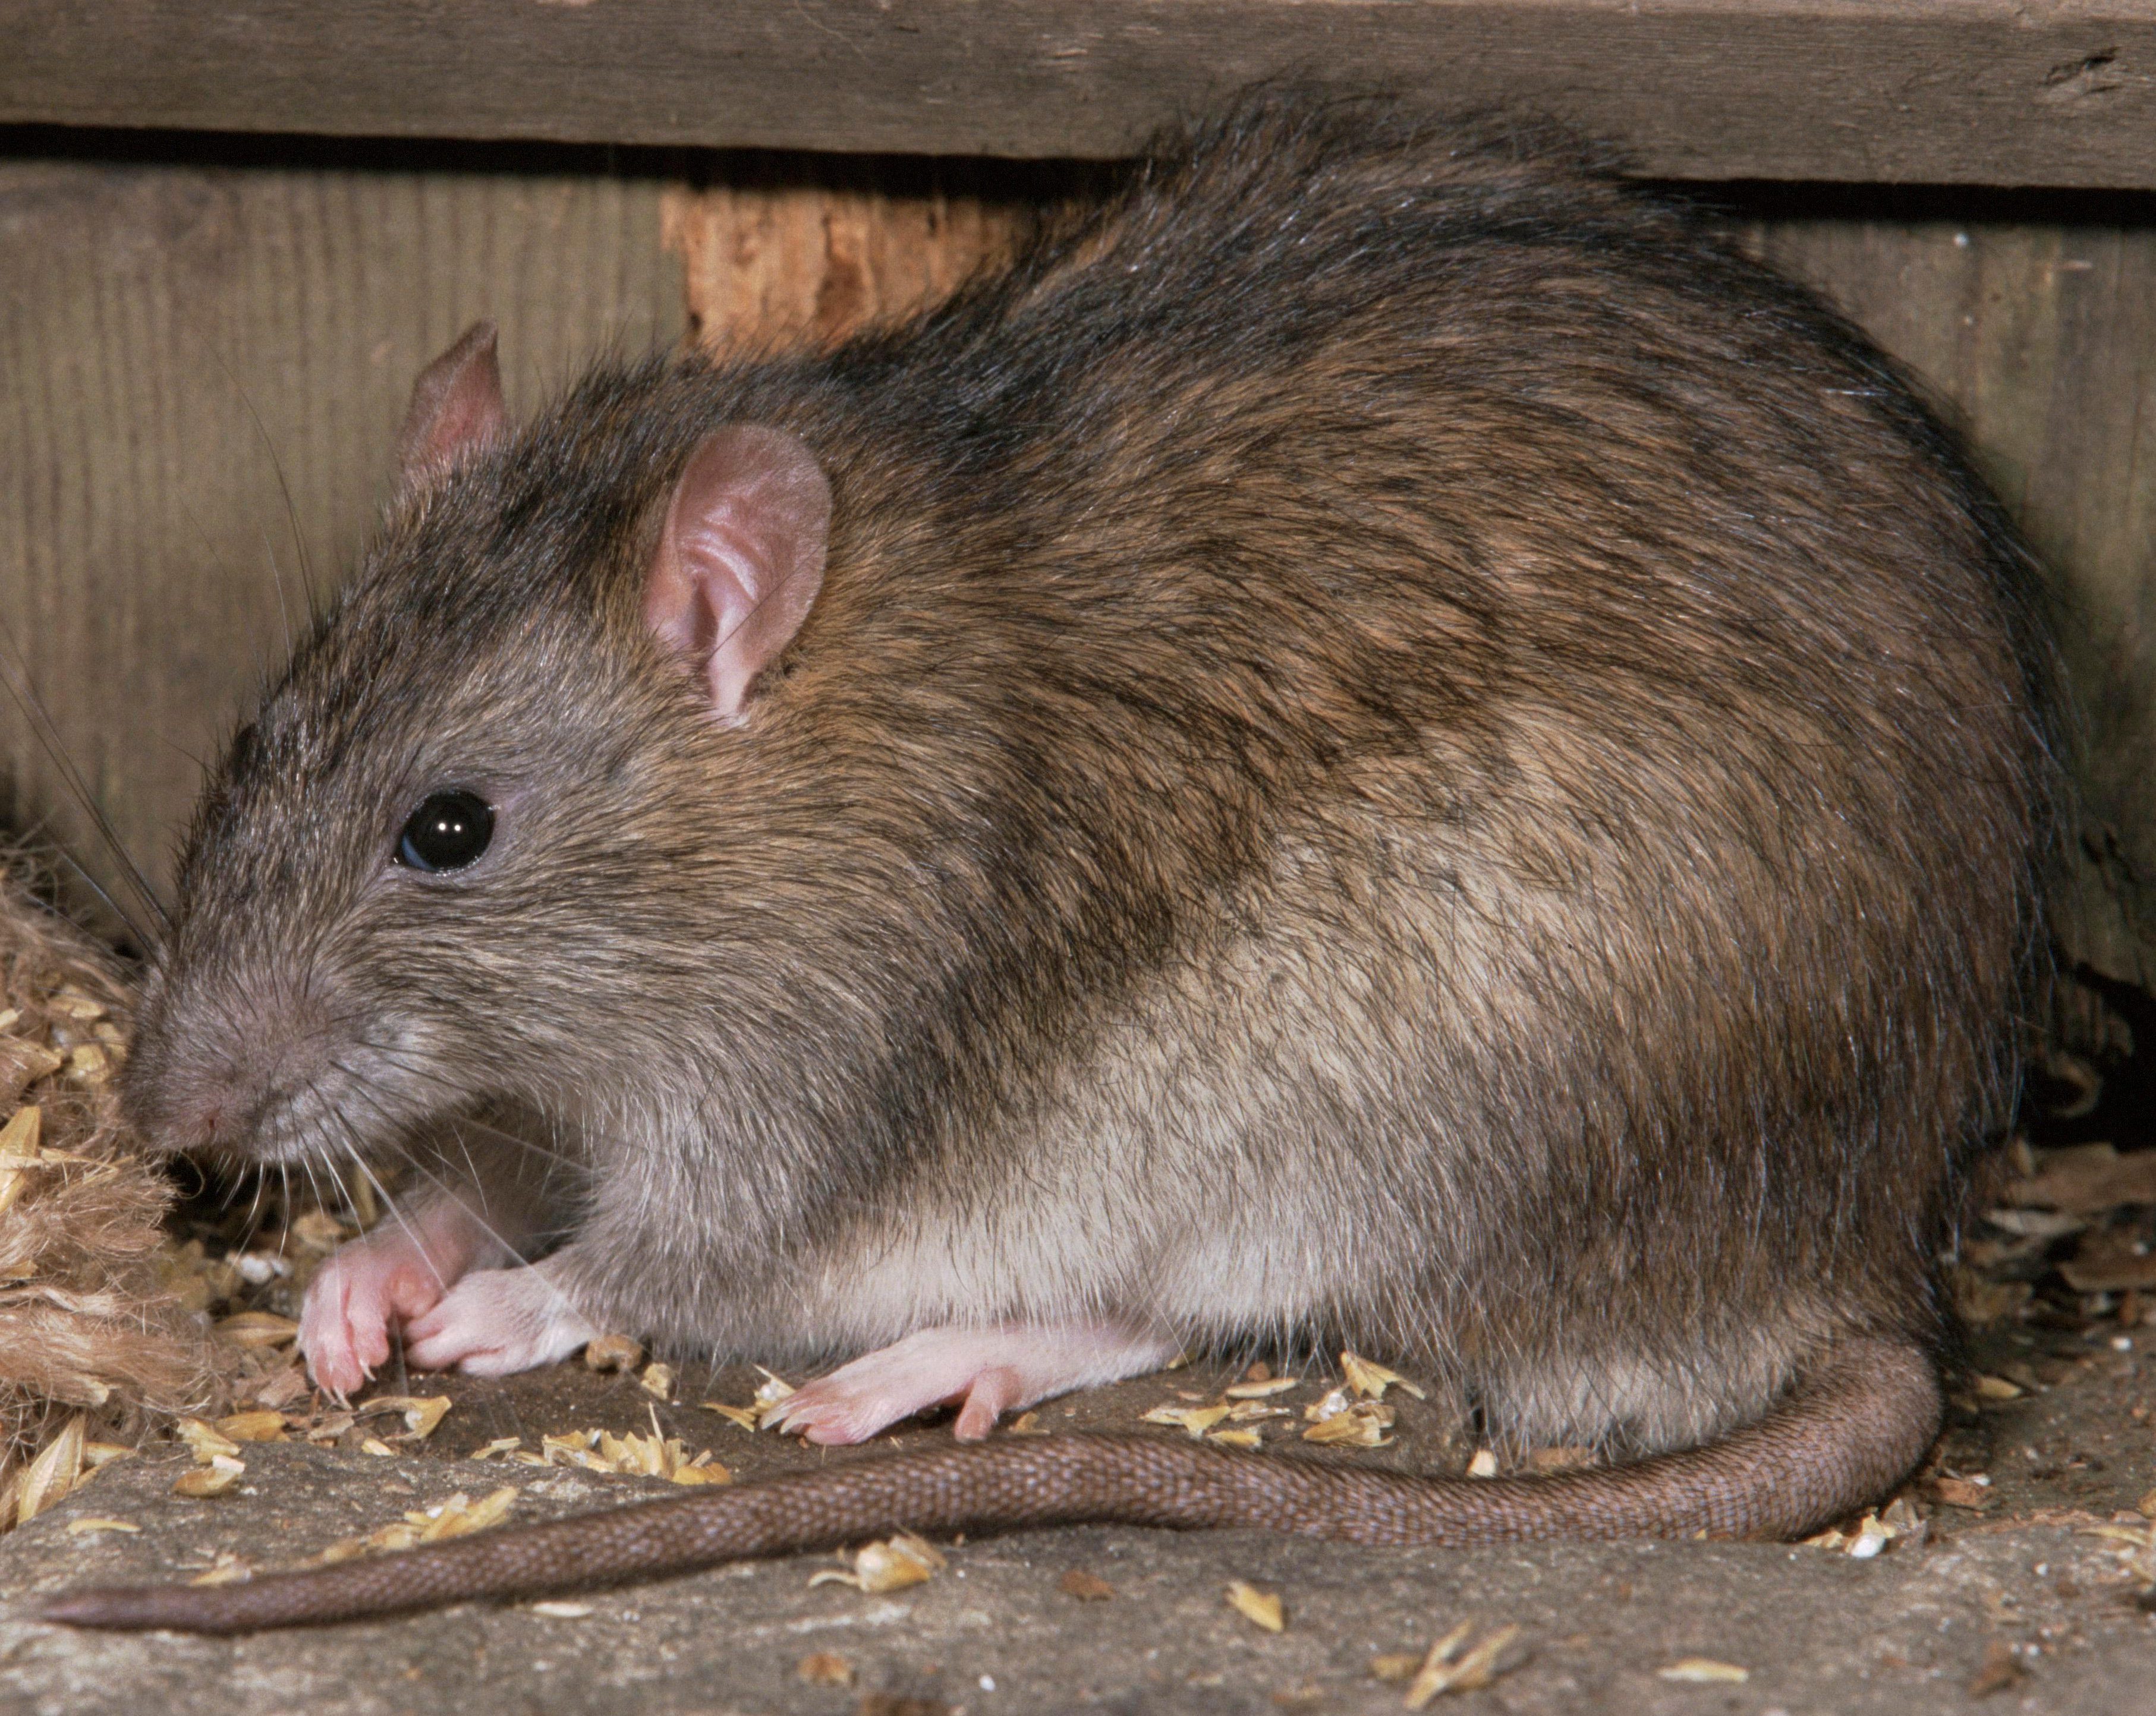 Серая крыса — неприятный и опасный грызун! серая крыса